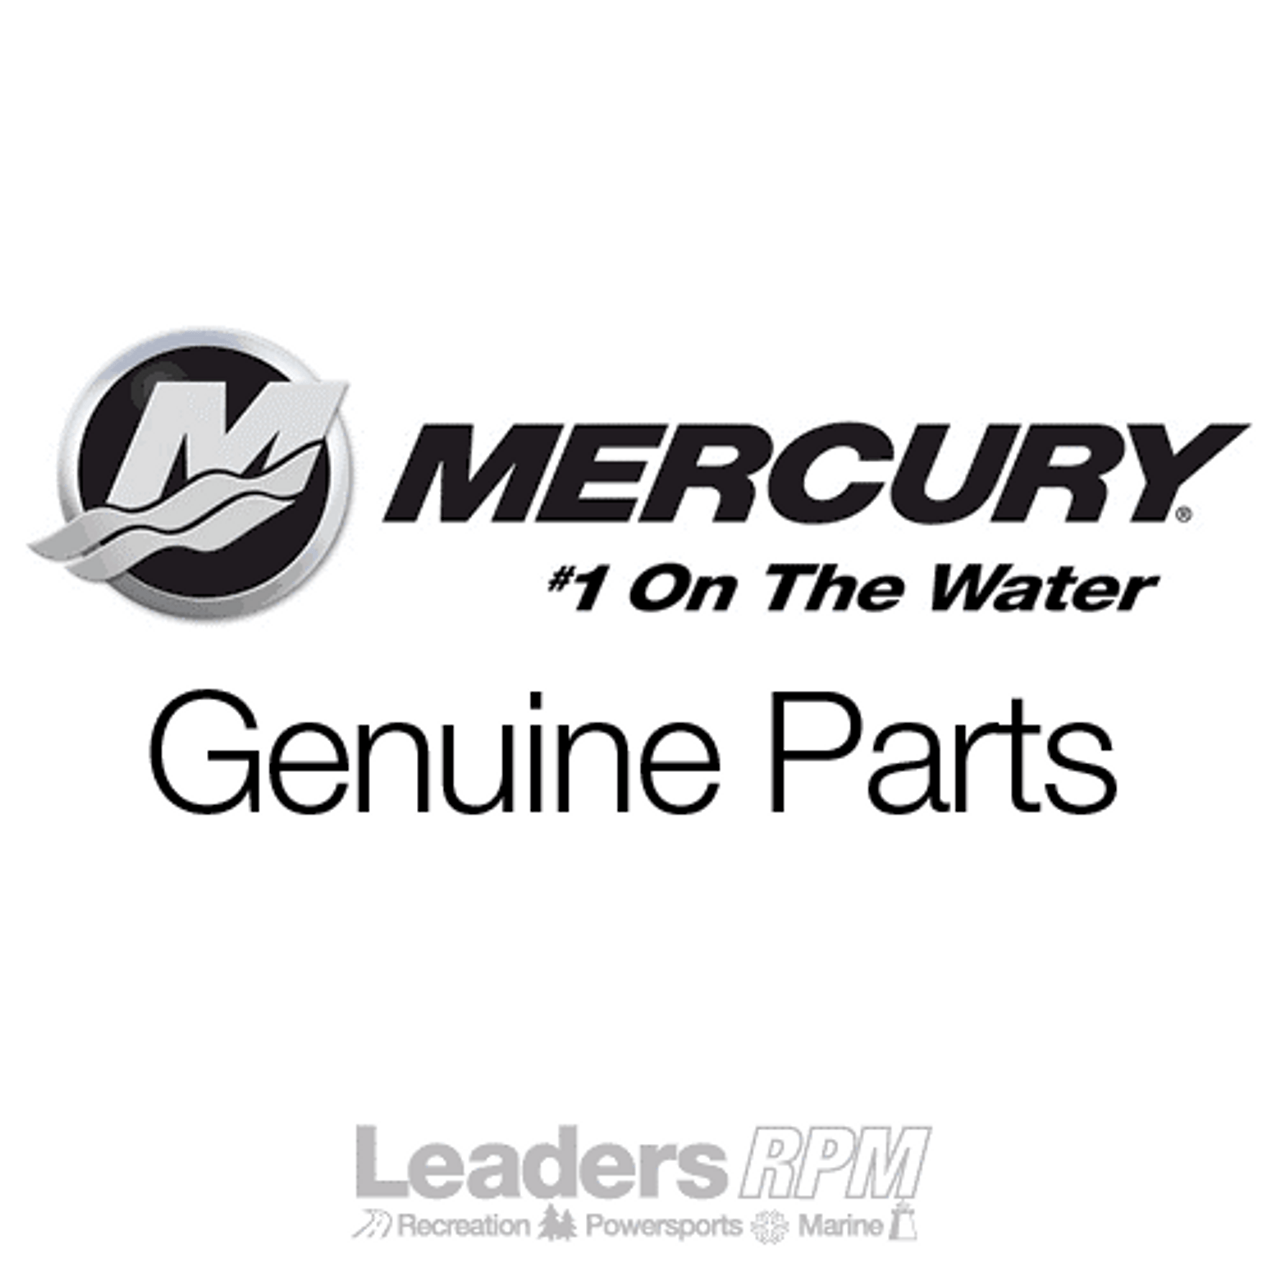 Mercury Marine/Mercruiser New OEM Piston Pin Needle Bearing, 47270, 29-47270x10